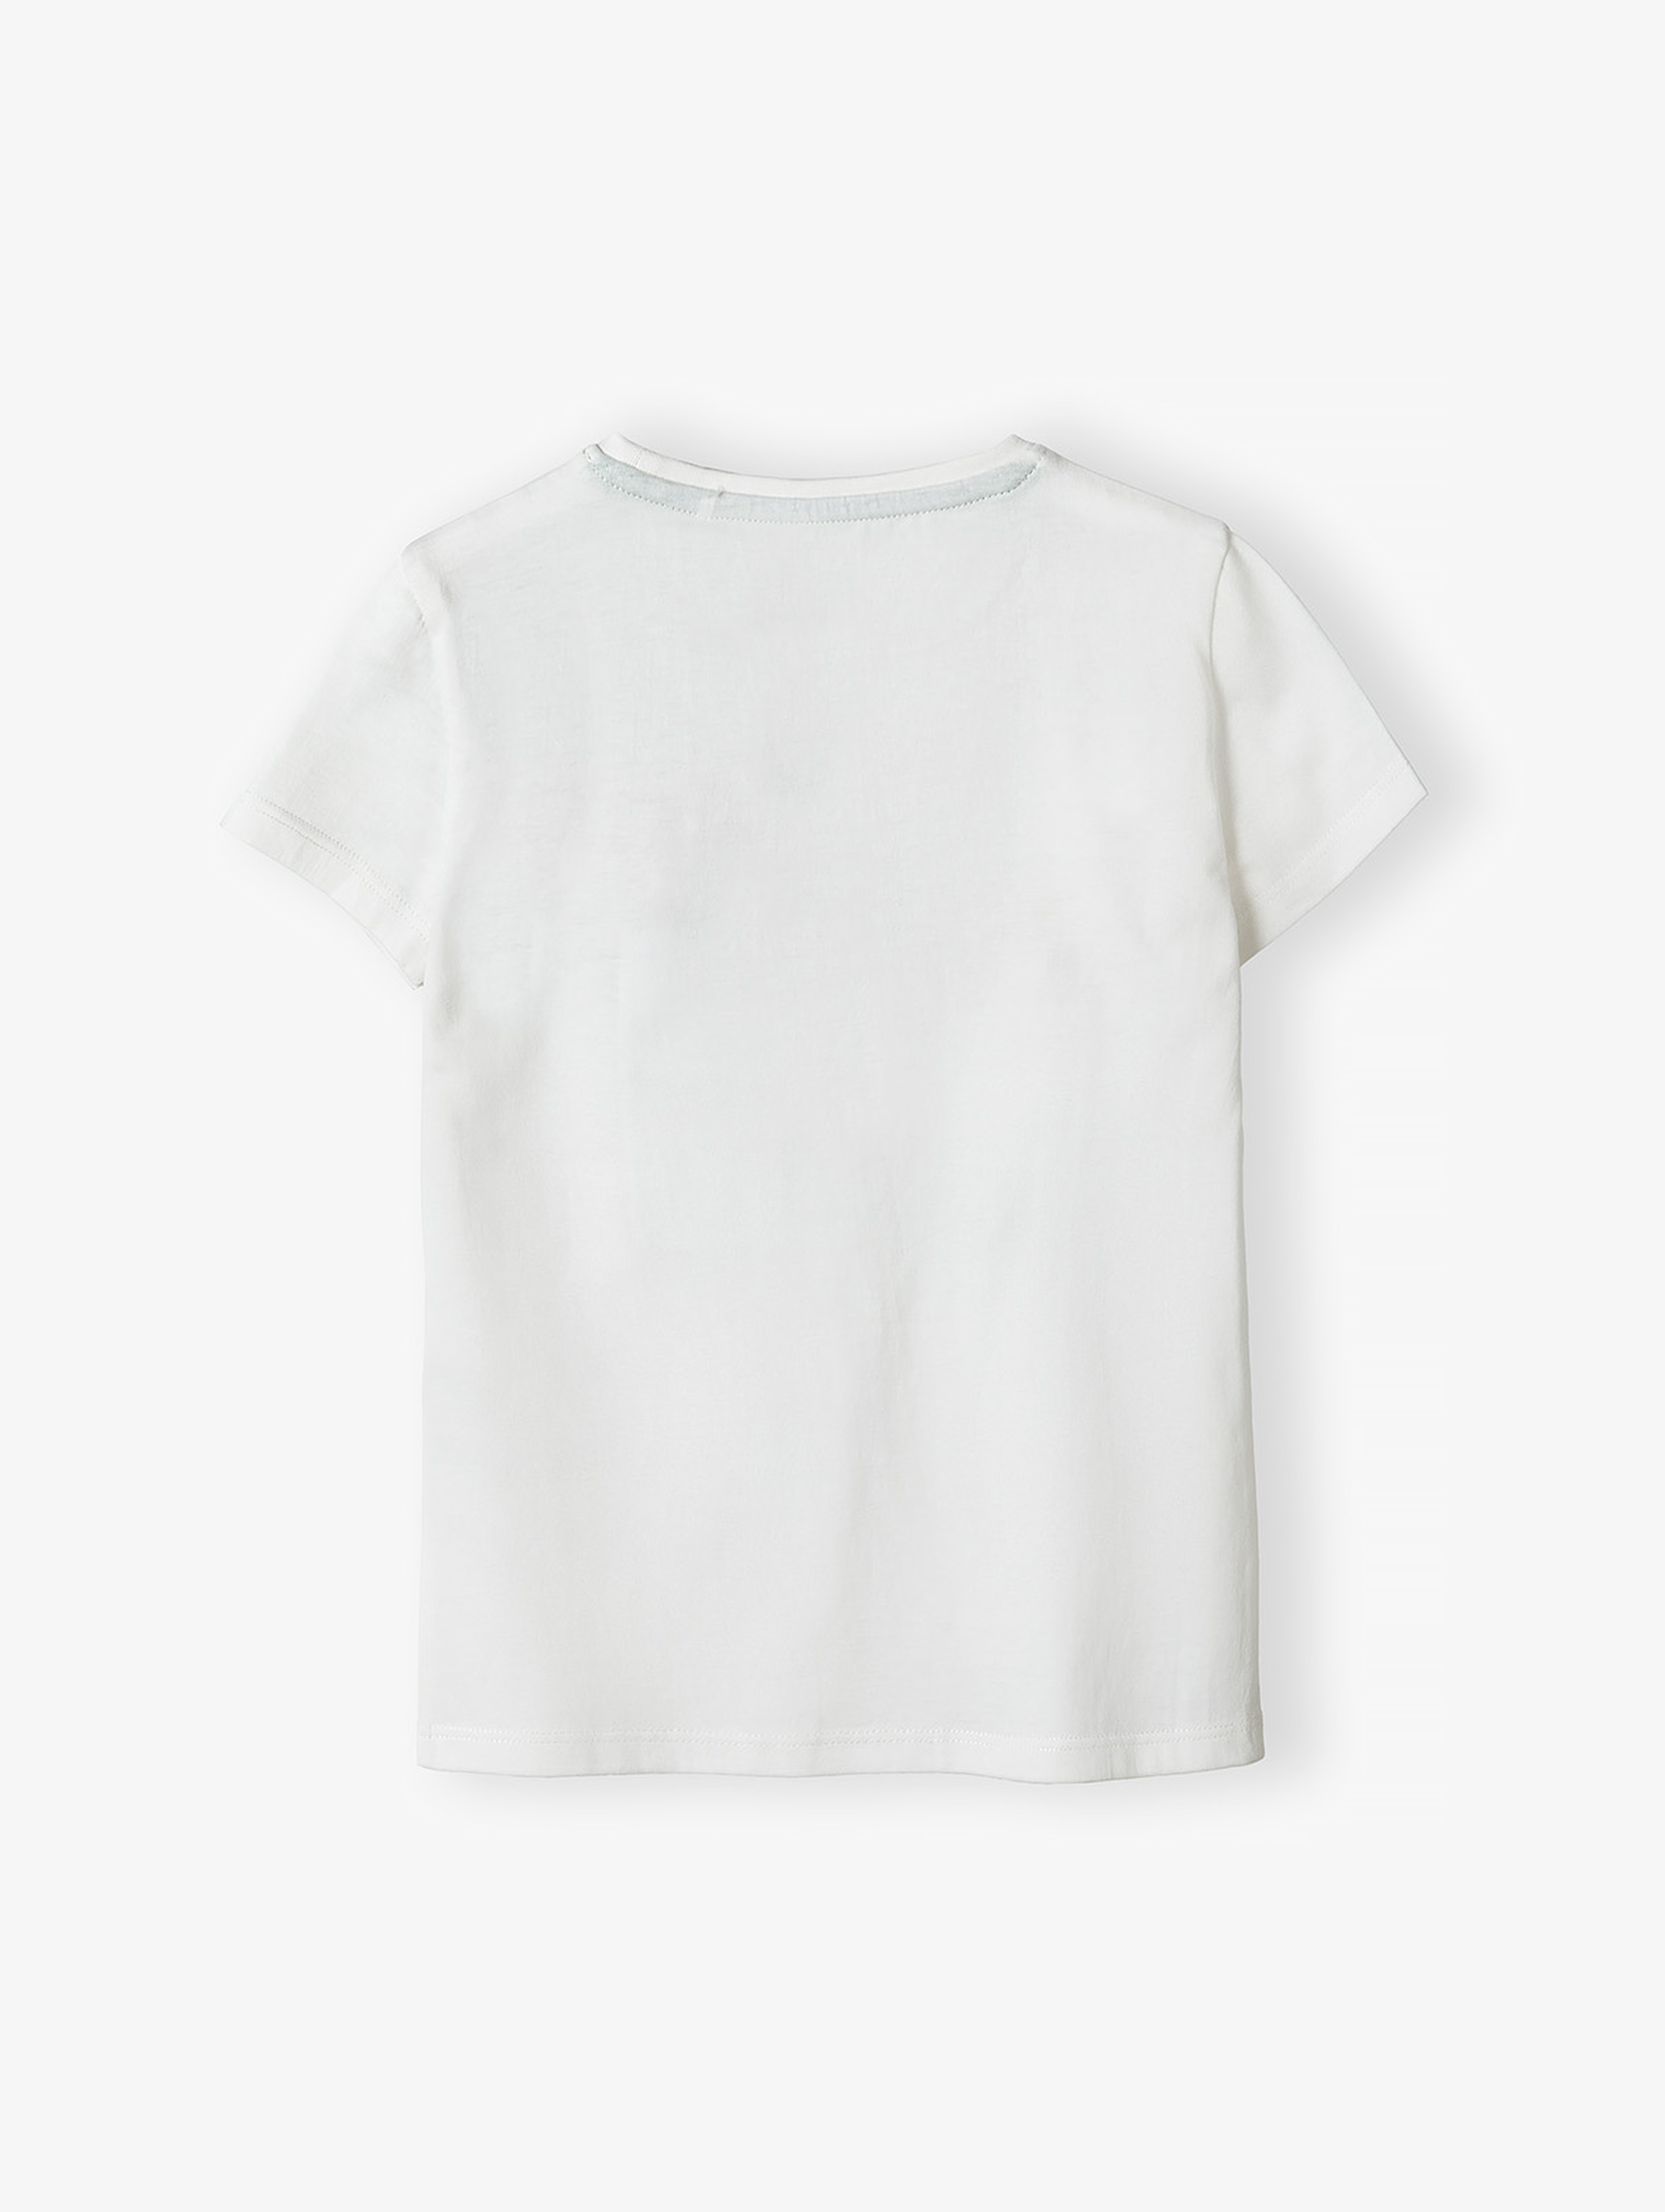 Elegancki t-shirt bawełniany dla dziewczynki - biały